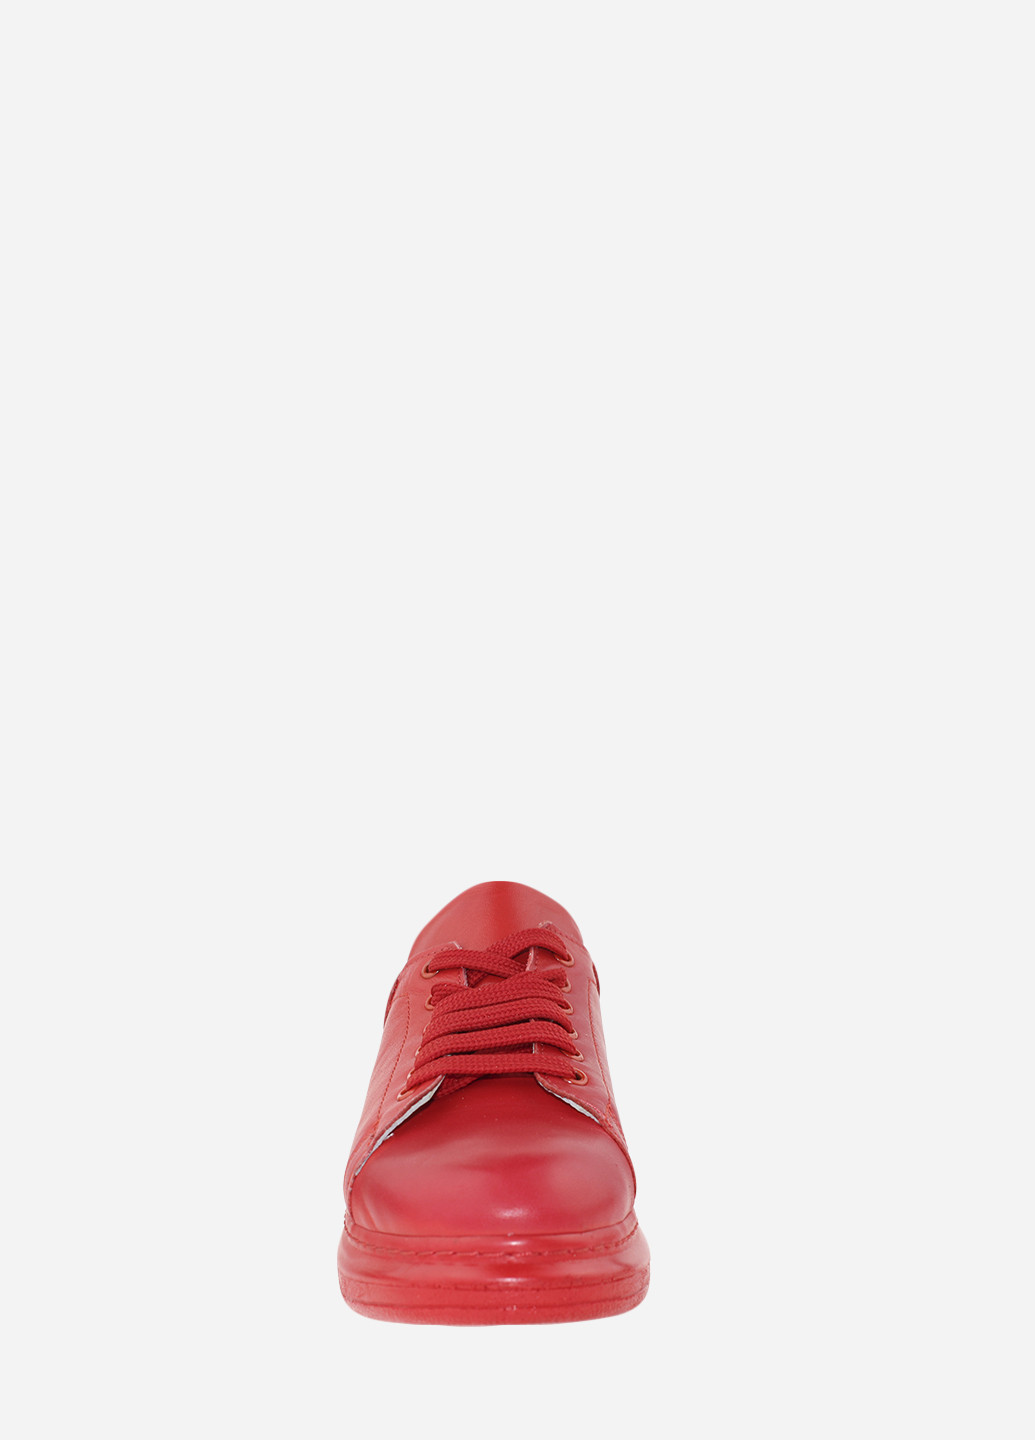 Червоні осінні кросівки re377-920 червоний Evromoda